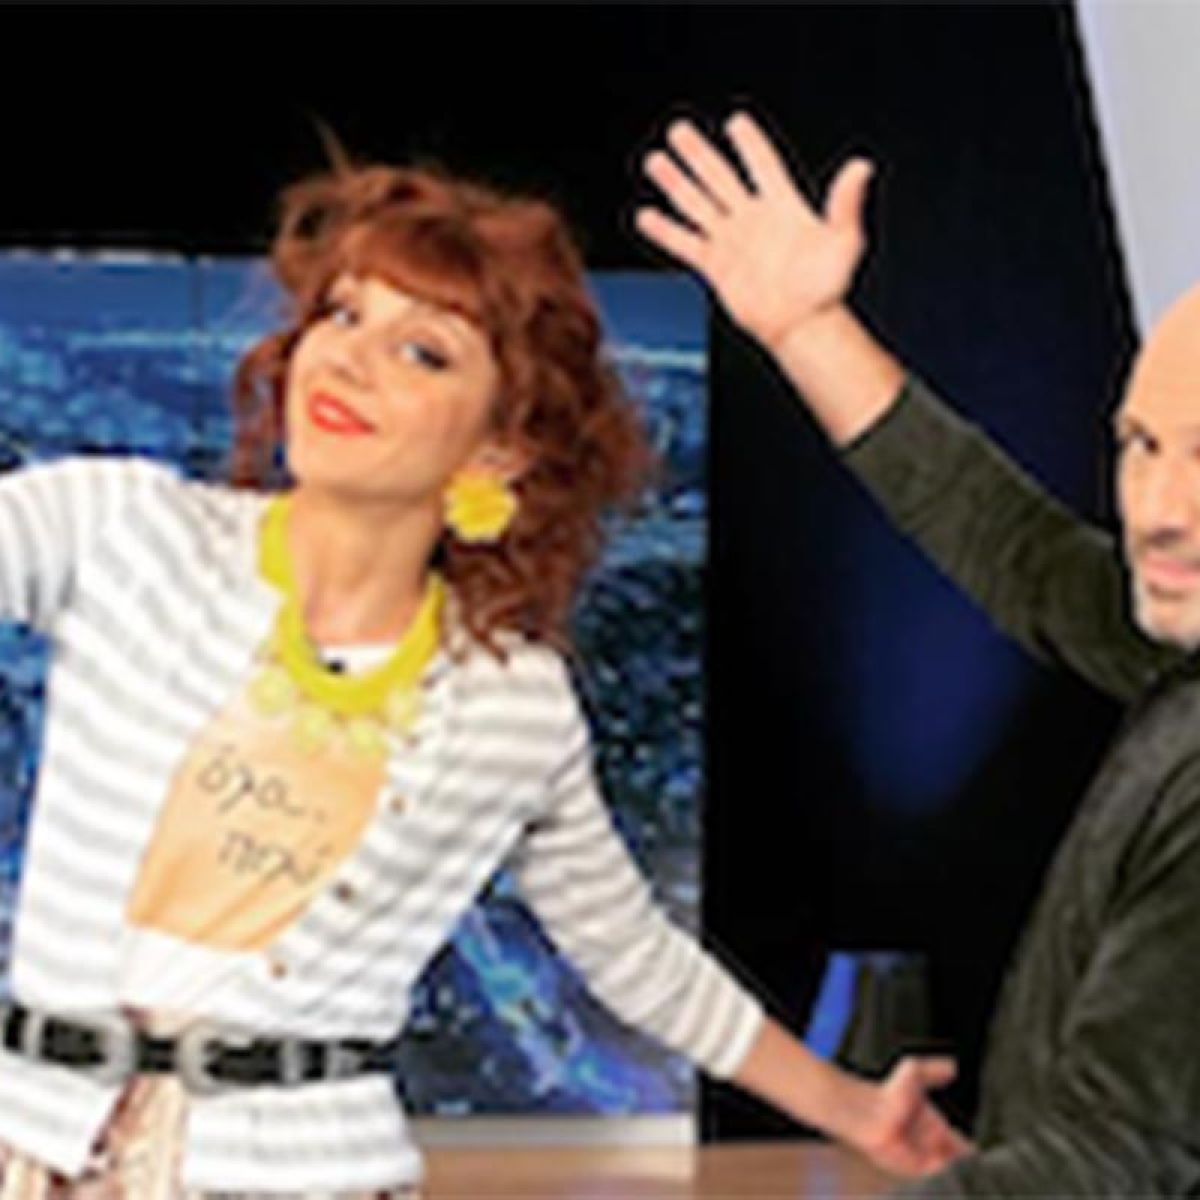 Η Ματίνα Νικολάου με περούκα KDG στην εκπομπή “Για την παρέα” στο Open Beyond Tv